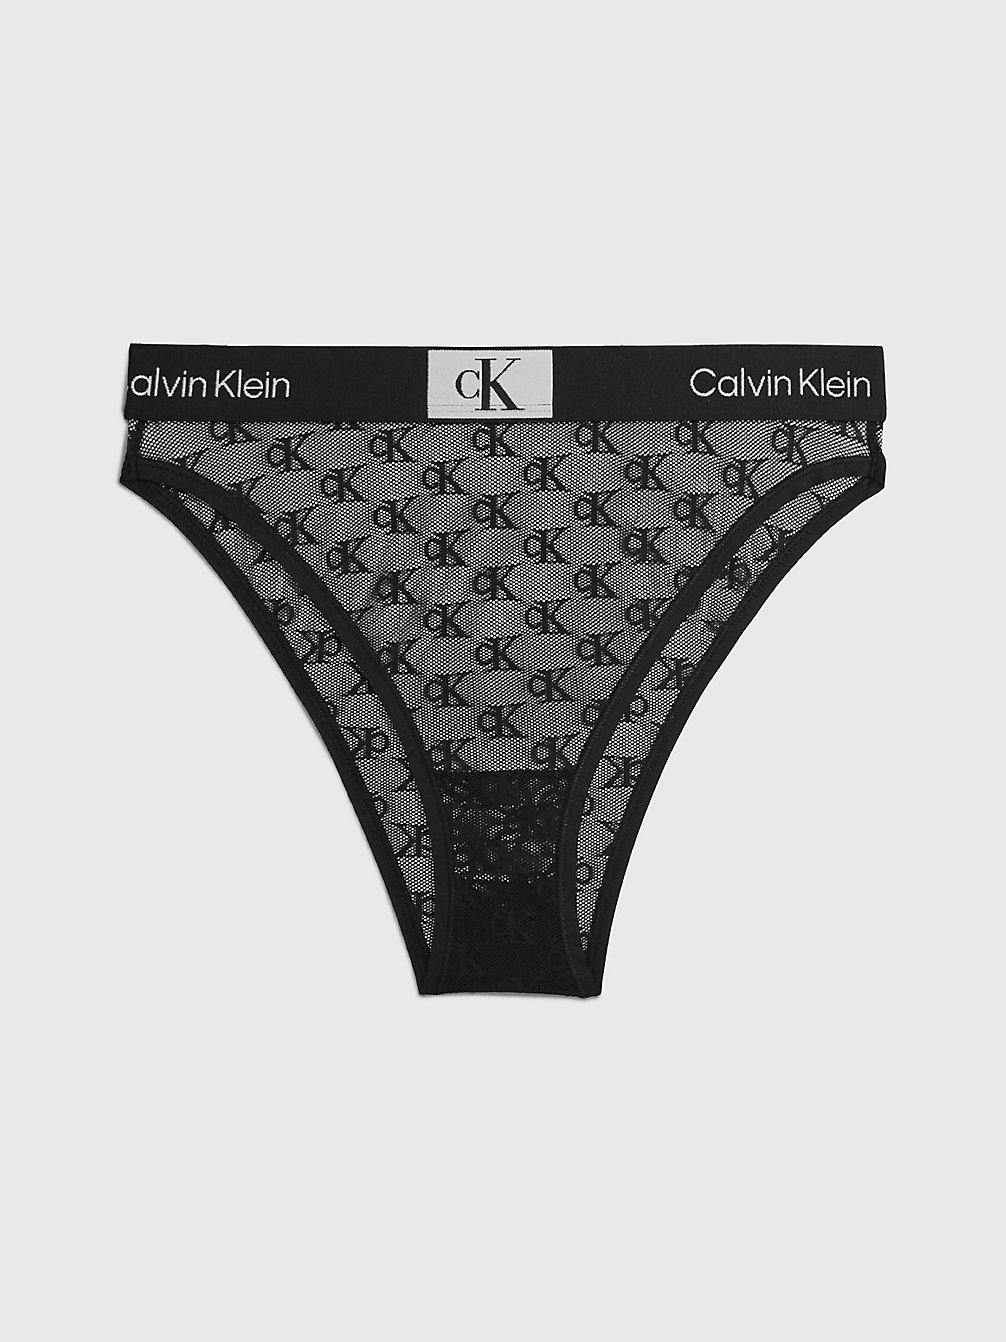 BLACK Brazilian Slip Mit Spitzenbesatz - Ck96 undefined Damen Calvin Klein